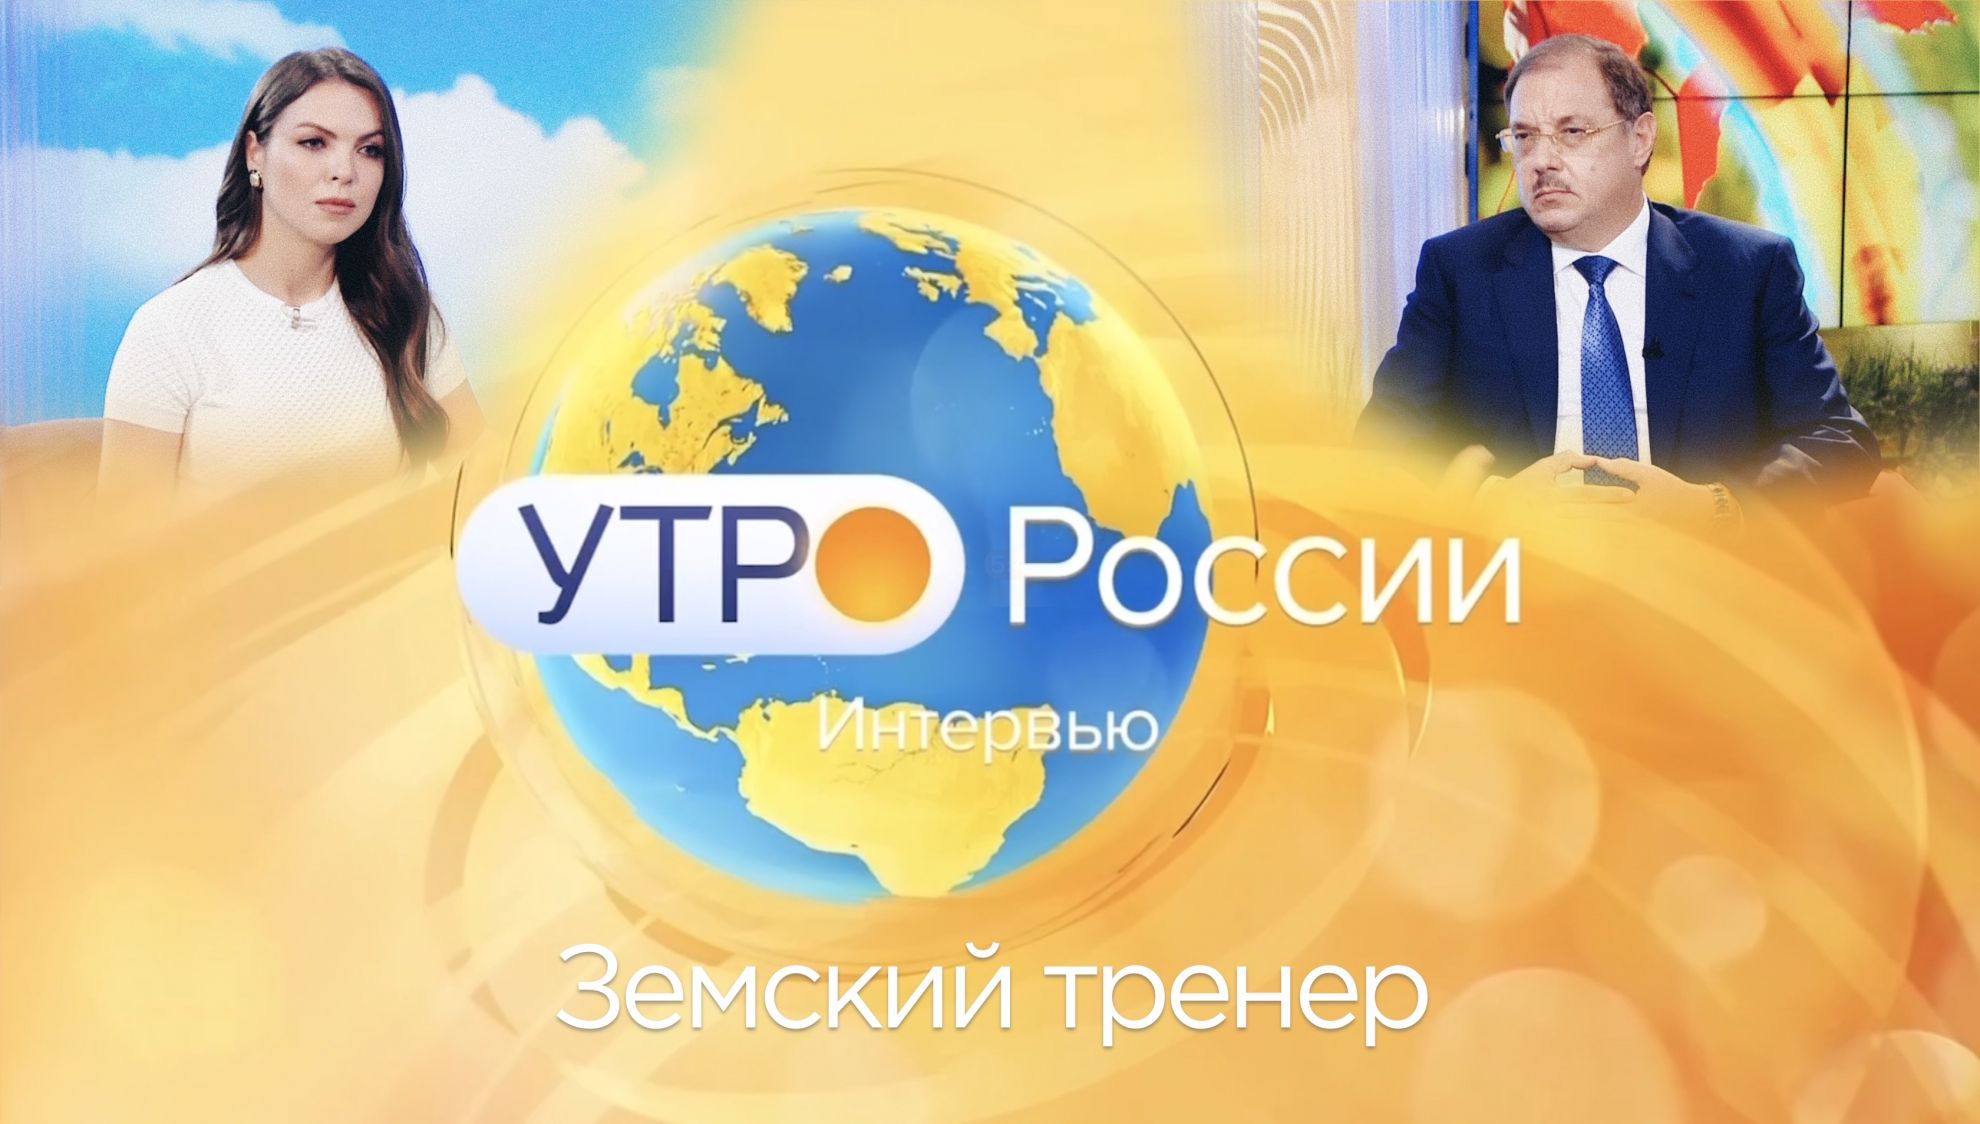 Борис Пайкин рассказал про программу "Земский тренер" на телепередаче "Утро России"